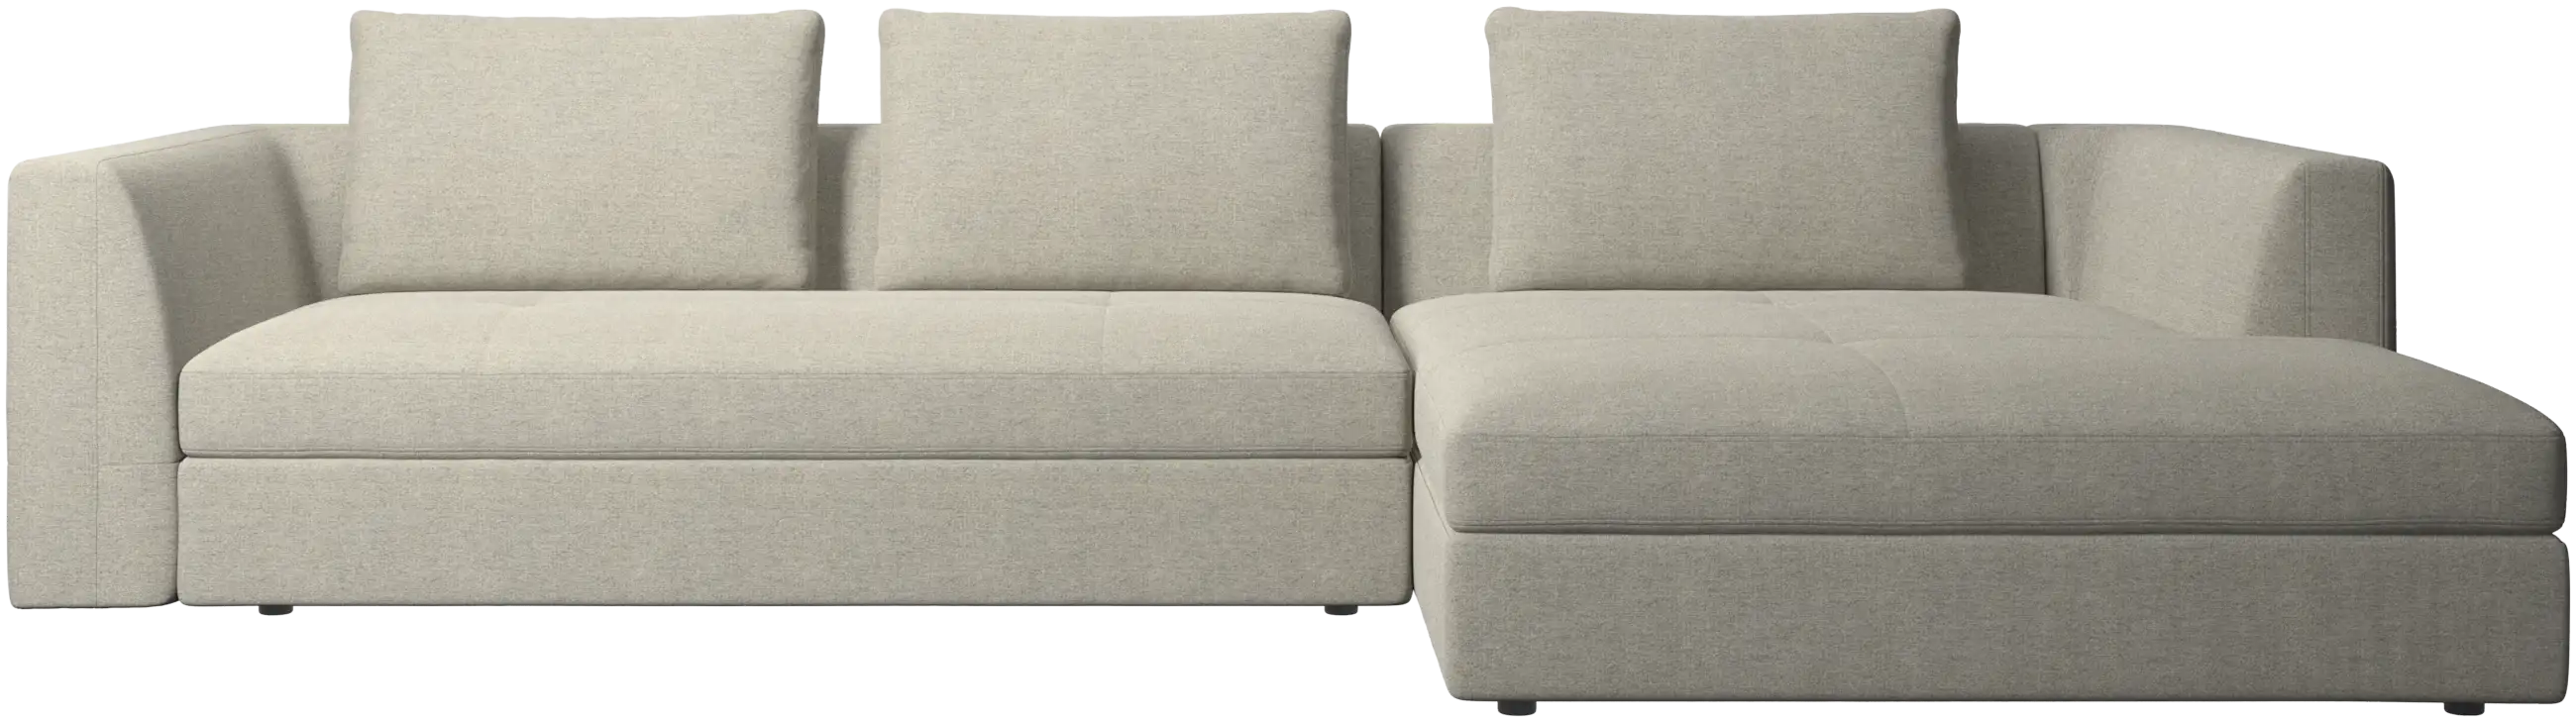 Bergamo sofa mit liegeeinheit